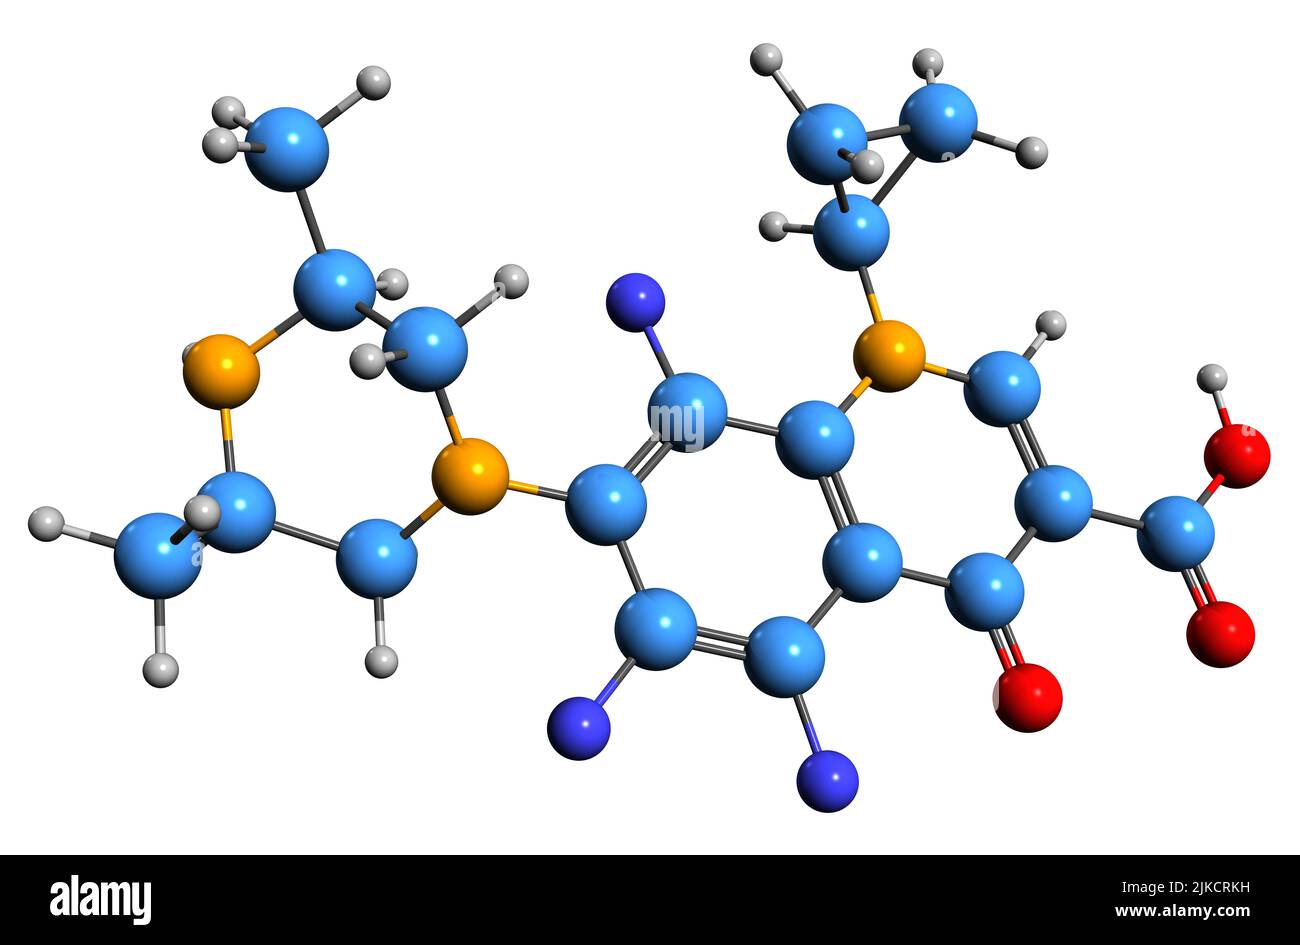 3D Bild der Orbifloxacin-Skelettformel - molekulare chemische Struktur des Fluorchinolon-Antibiotikums, isoliert auf weißem Hintergrund Stockfoto